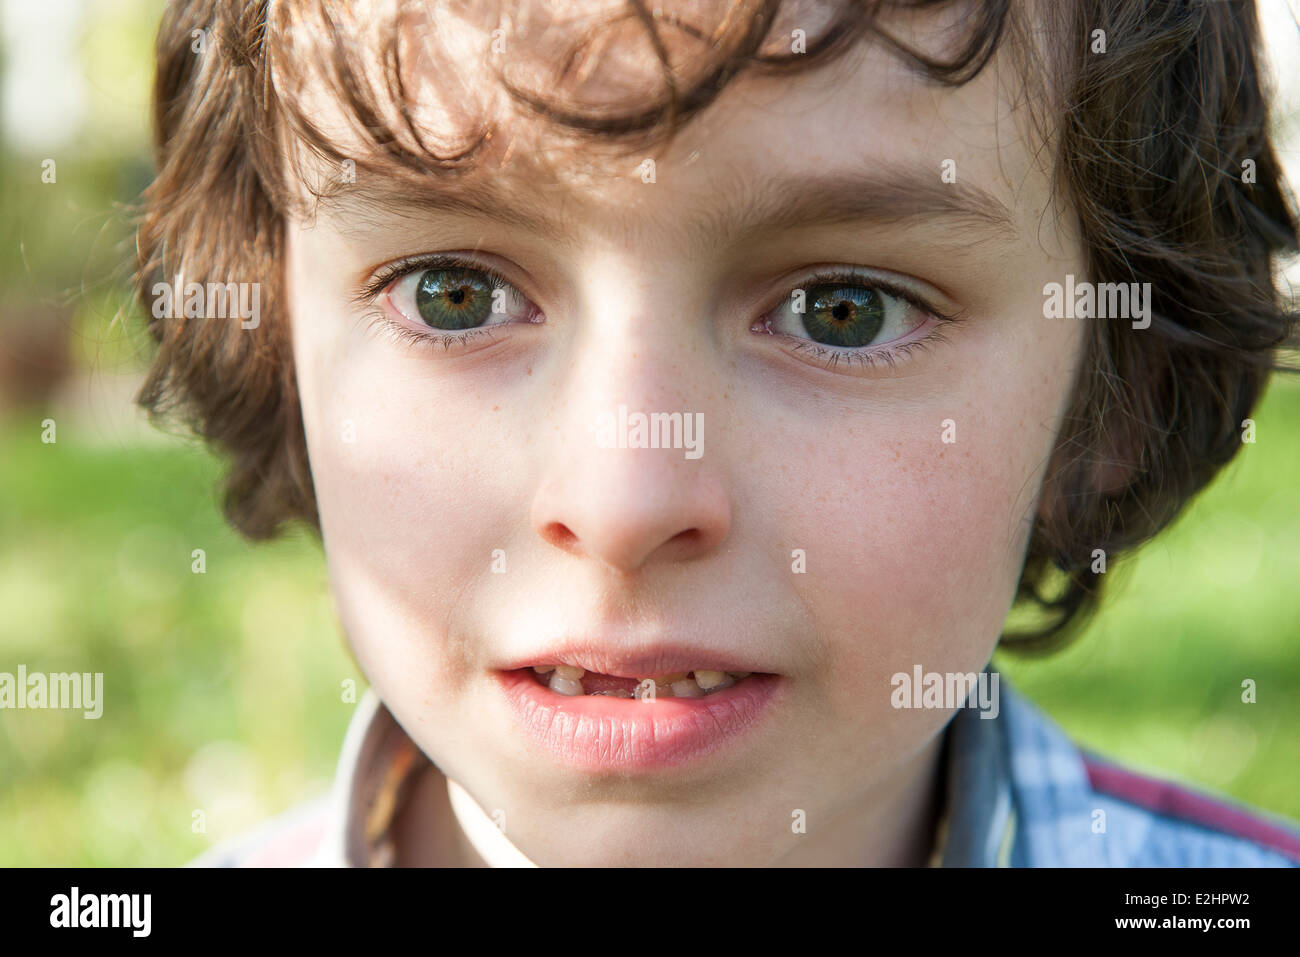 Junge im Freien, close-up portrait Stockfoto